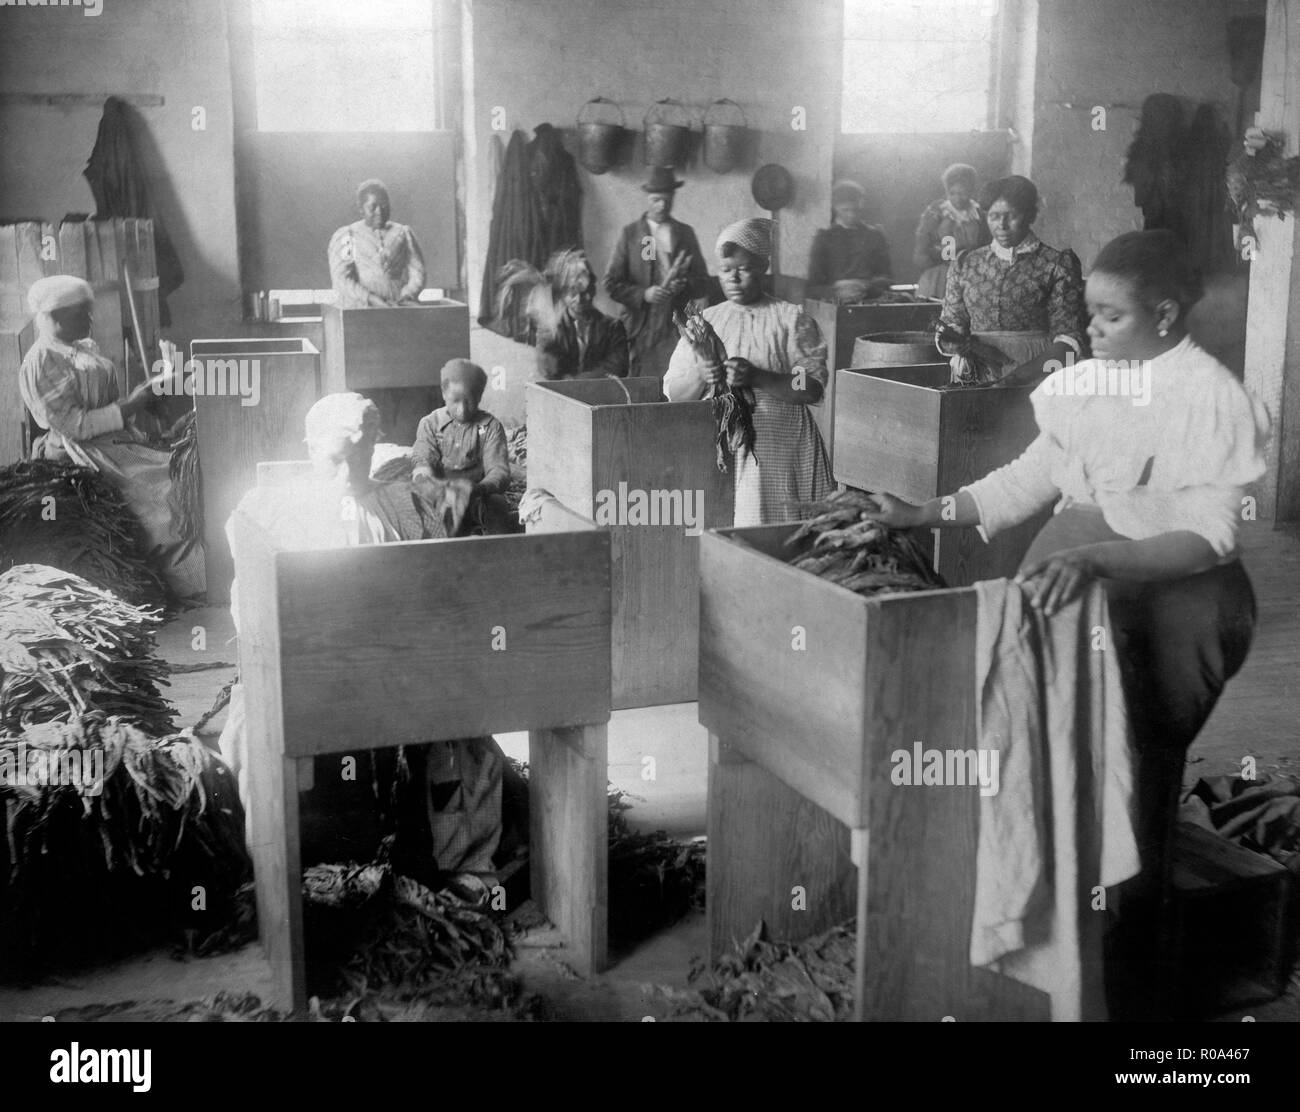 Les Afro-américains, pour la plupart des femmes, le tri du tabac, T. C. Williams & Co., Richmond, Virginia, USA, W.E.B. DuBois Collection, 1899 Banque D'Images